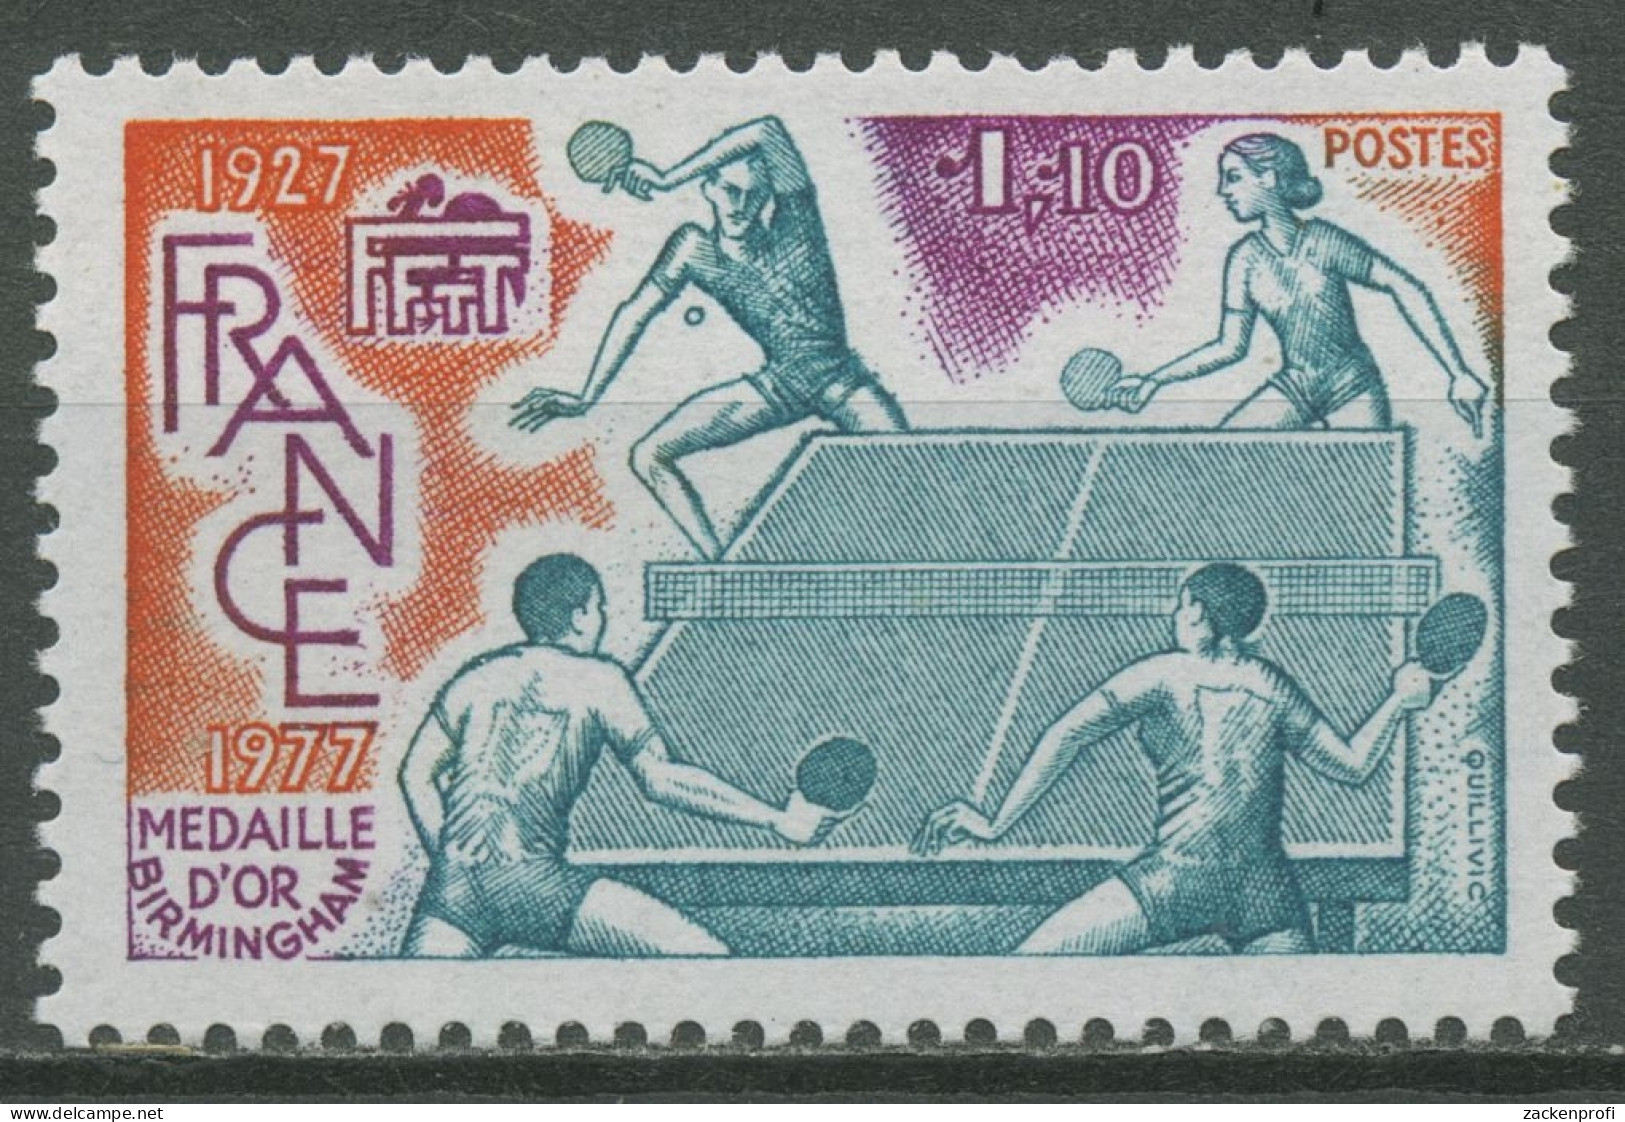 Frankreich 1977 Tischtennis 2060 Postfrisch - Nuevos